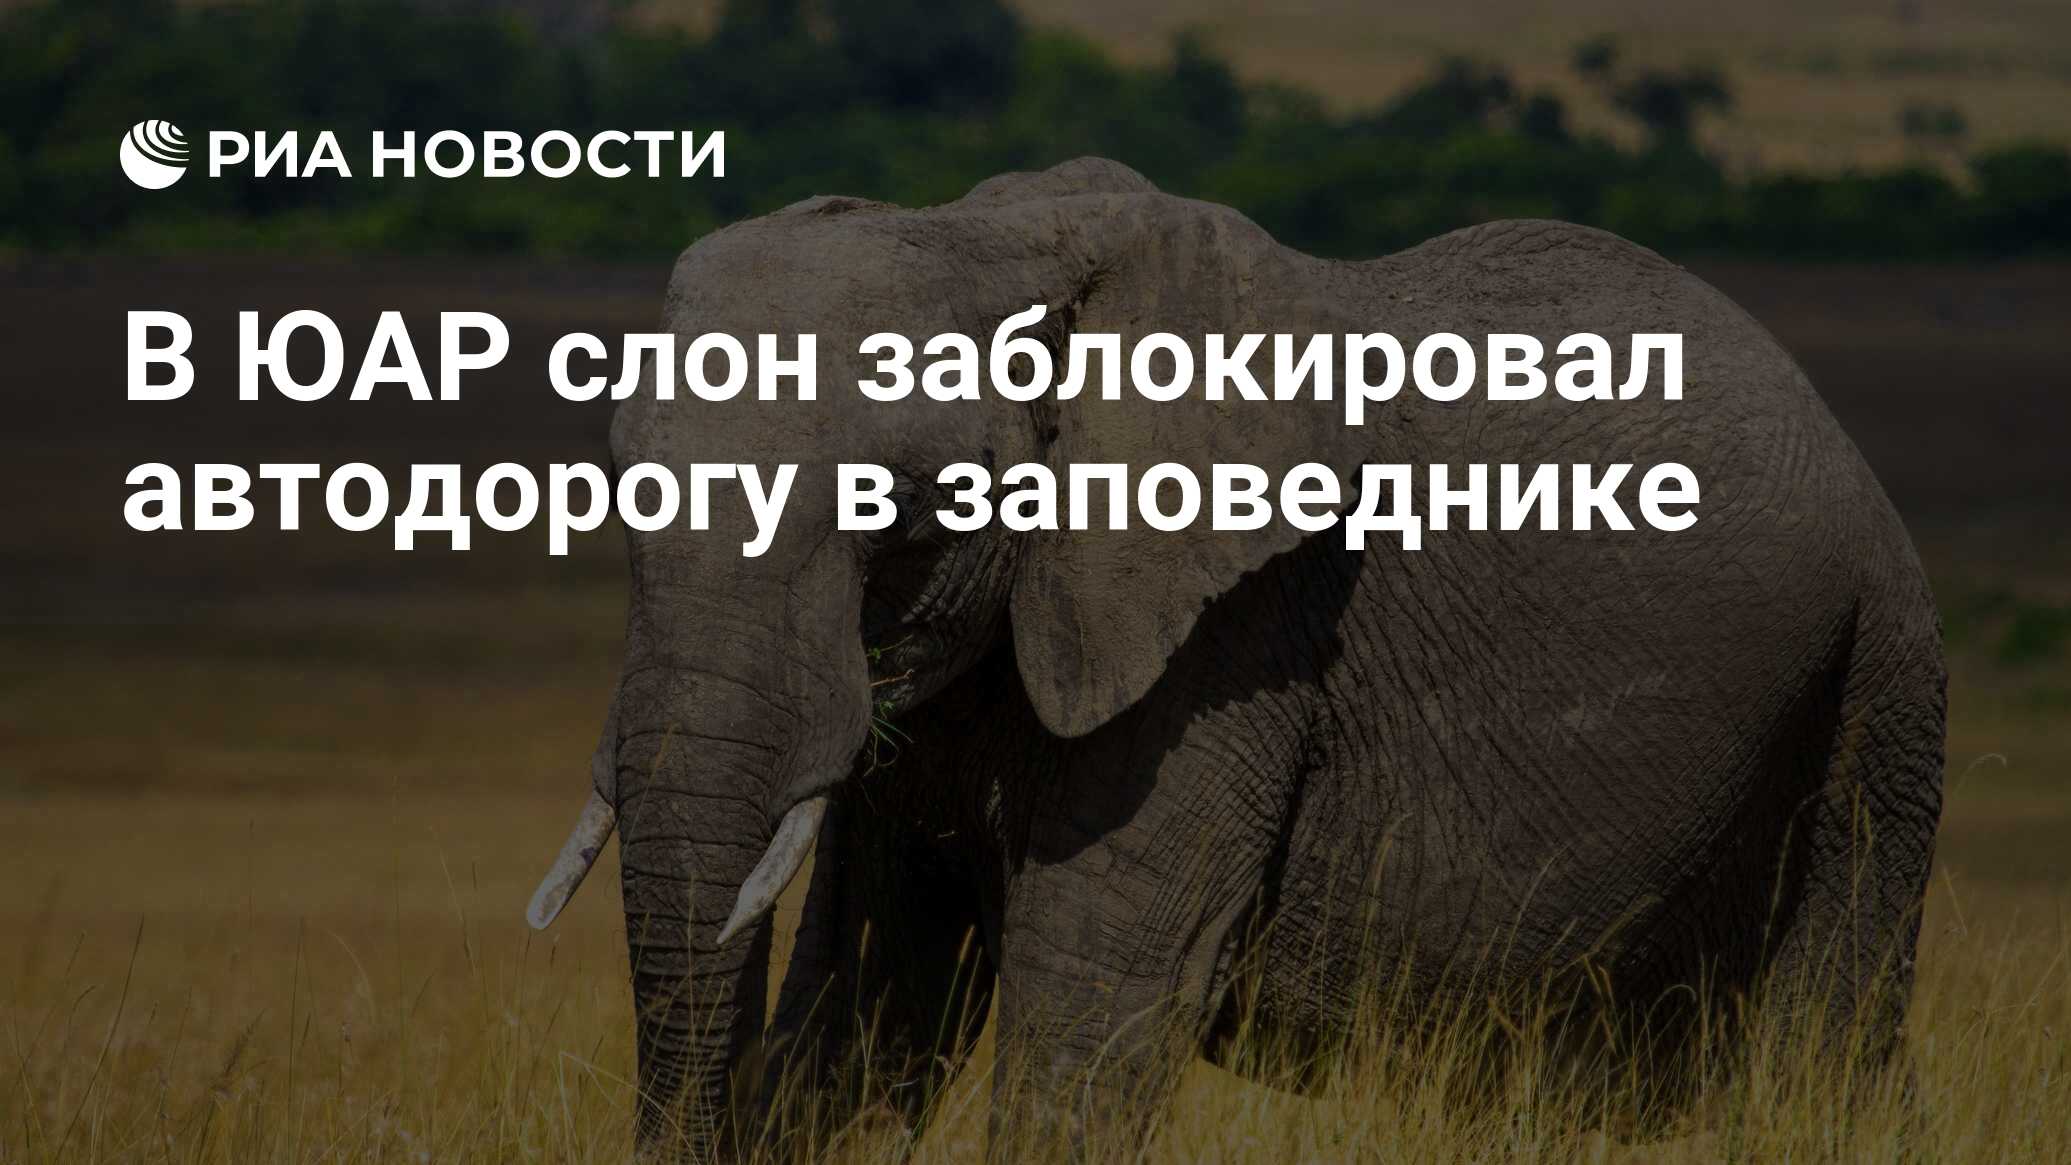 5 слоник. Заповедник африканского слона. Африканский слон Николая II. Пять слонов или пятеро слонов. Слоник заблокирована.